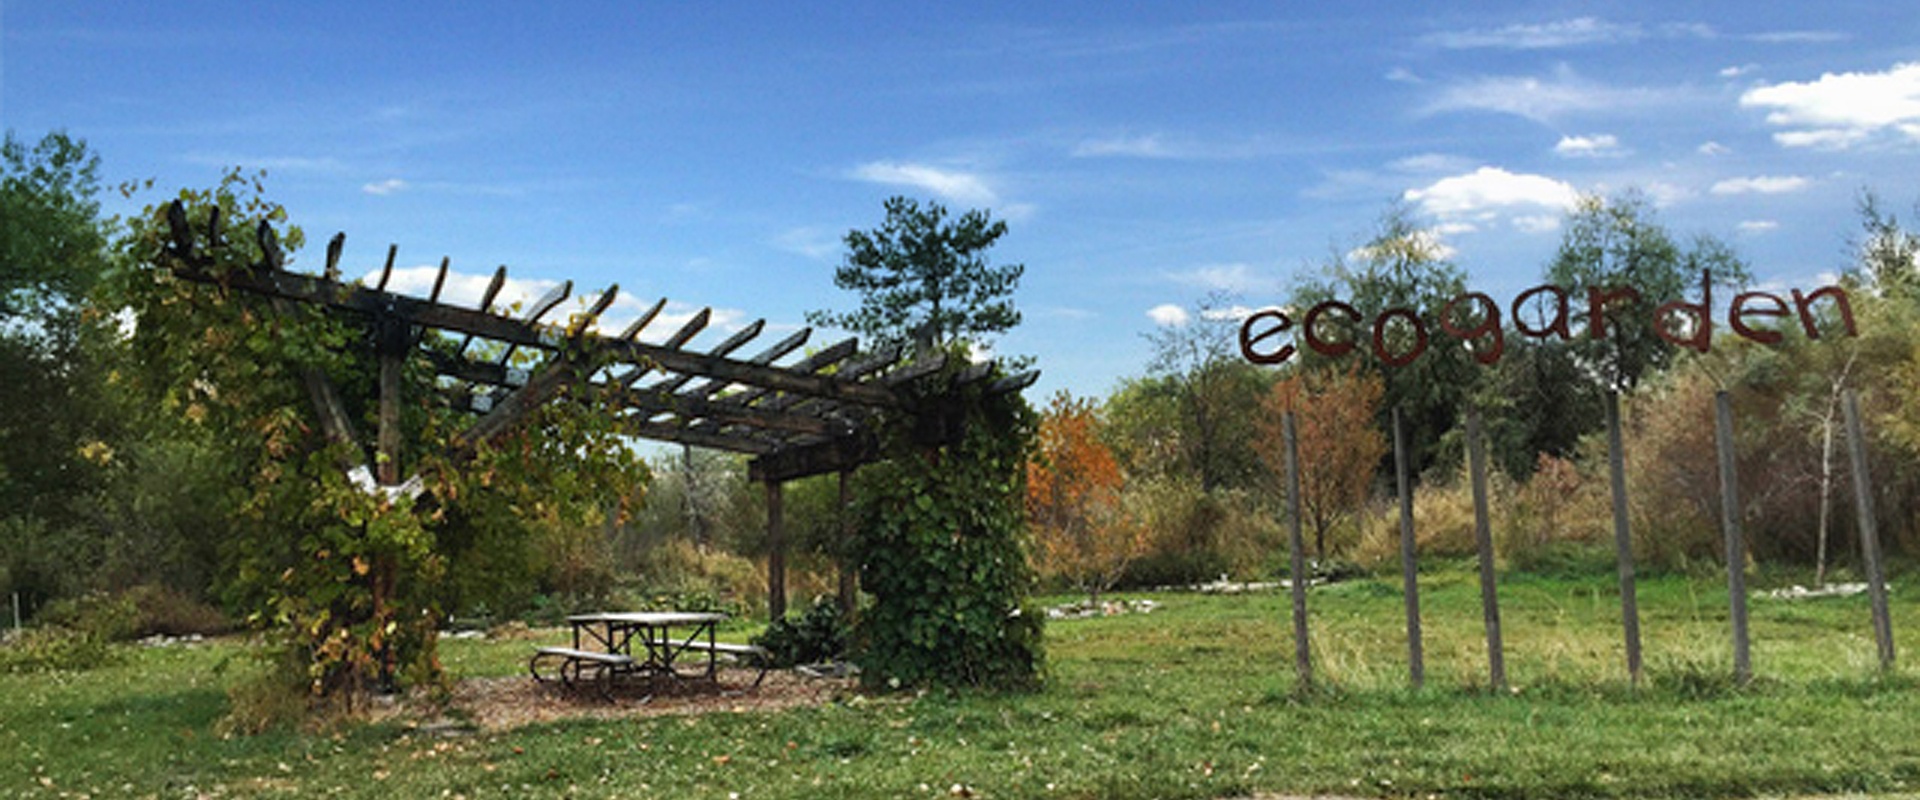 TreeUtah Eco Garden Pavilion